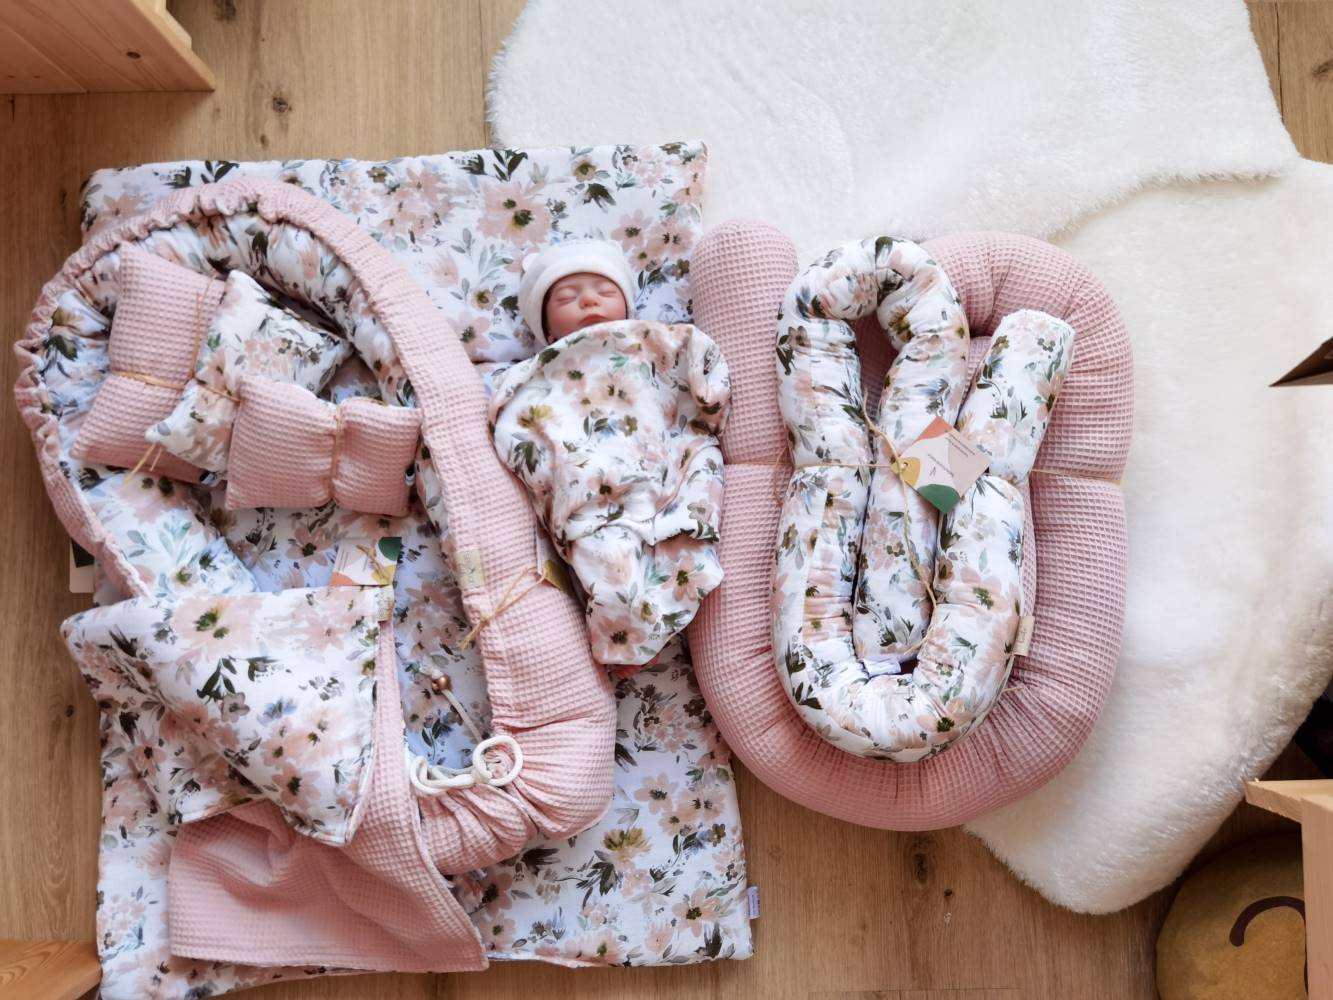 Tolles Newborn Set mit Krabbeldecke, Decke, Zirbenkissen, Minischlange und Bettschlange 